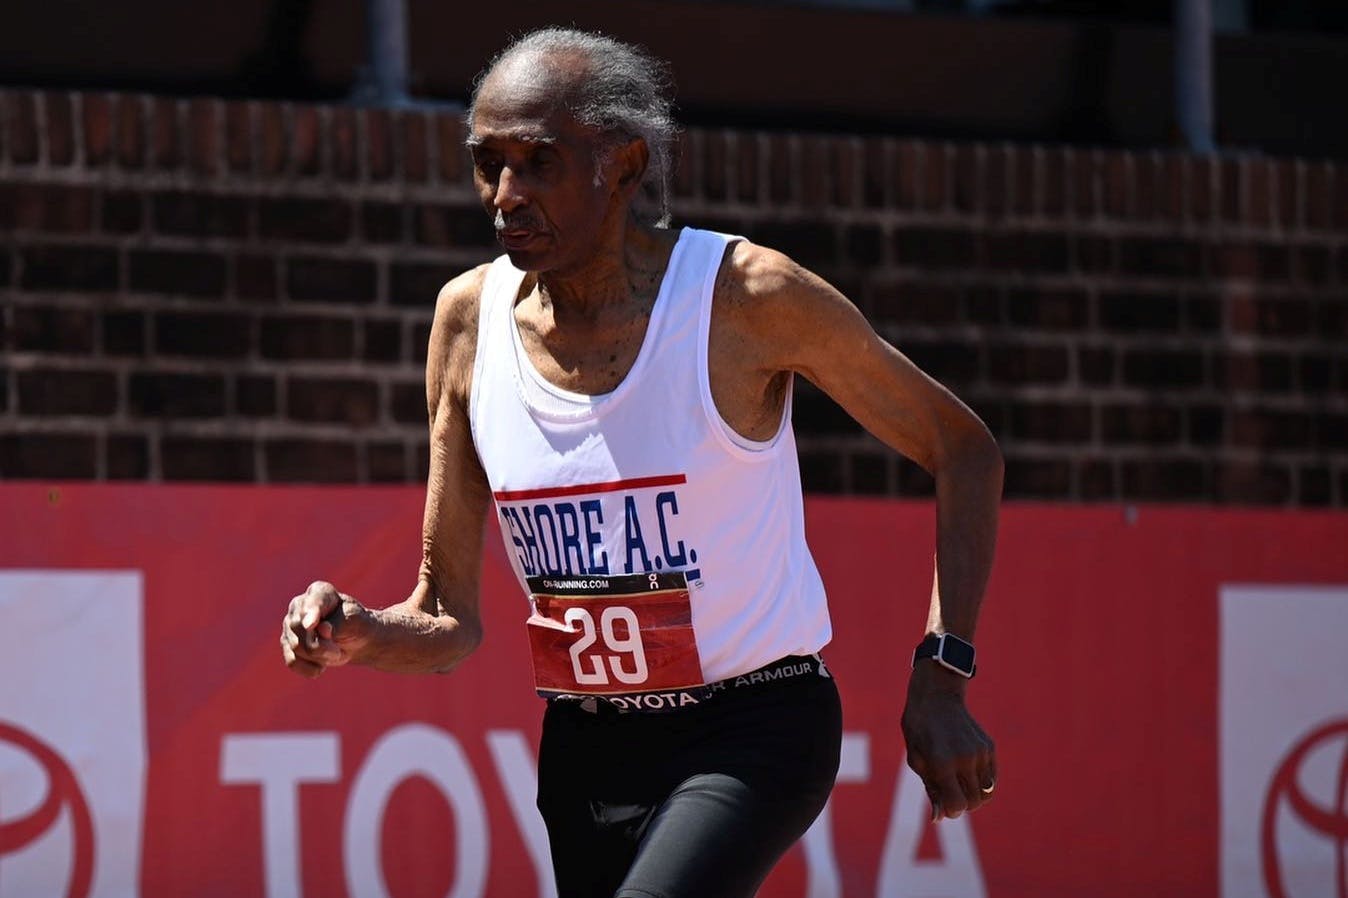 Έγινε 100 ετών την Παρασκευή και το Σάββατο έτρεξε «100άρι» σε 26.34!